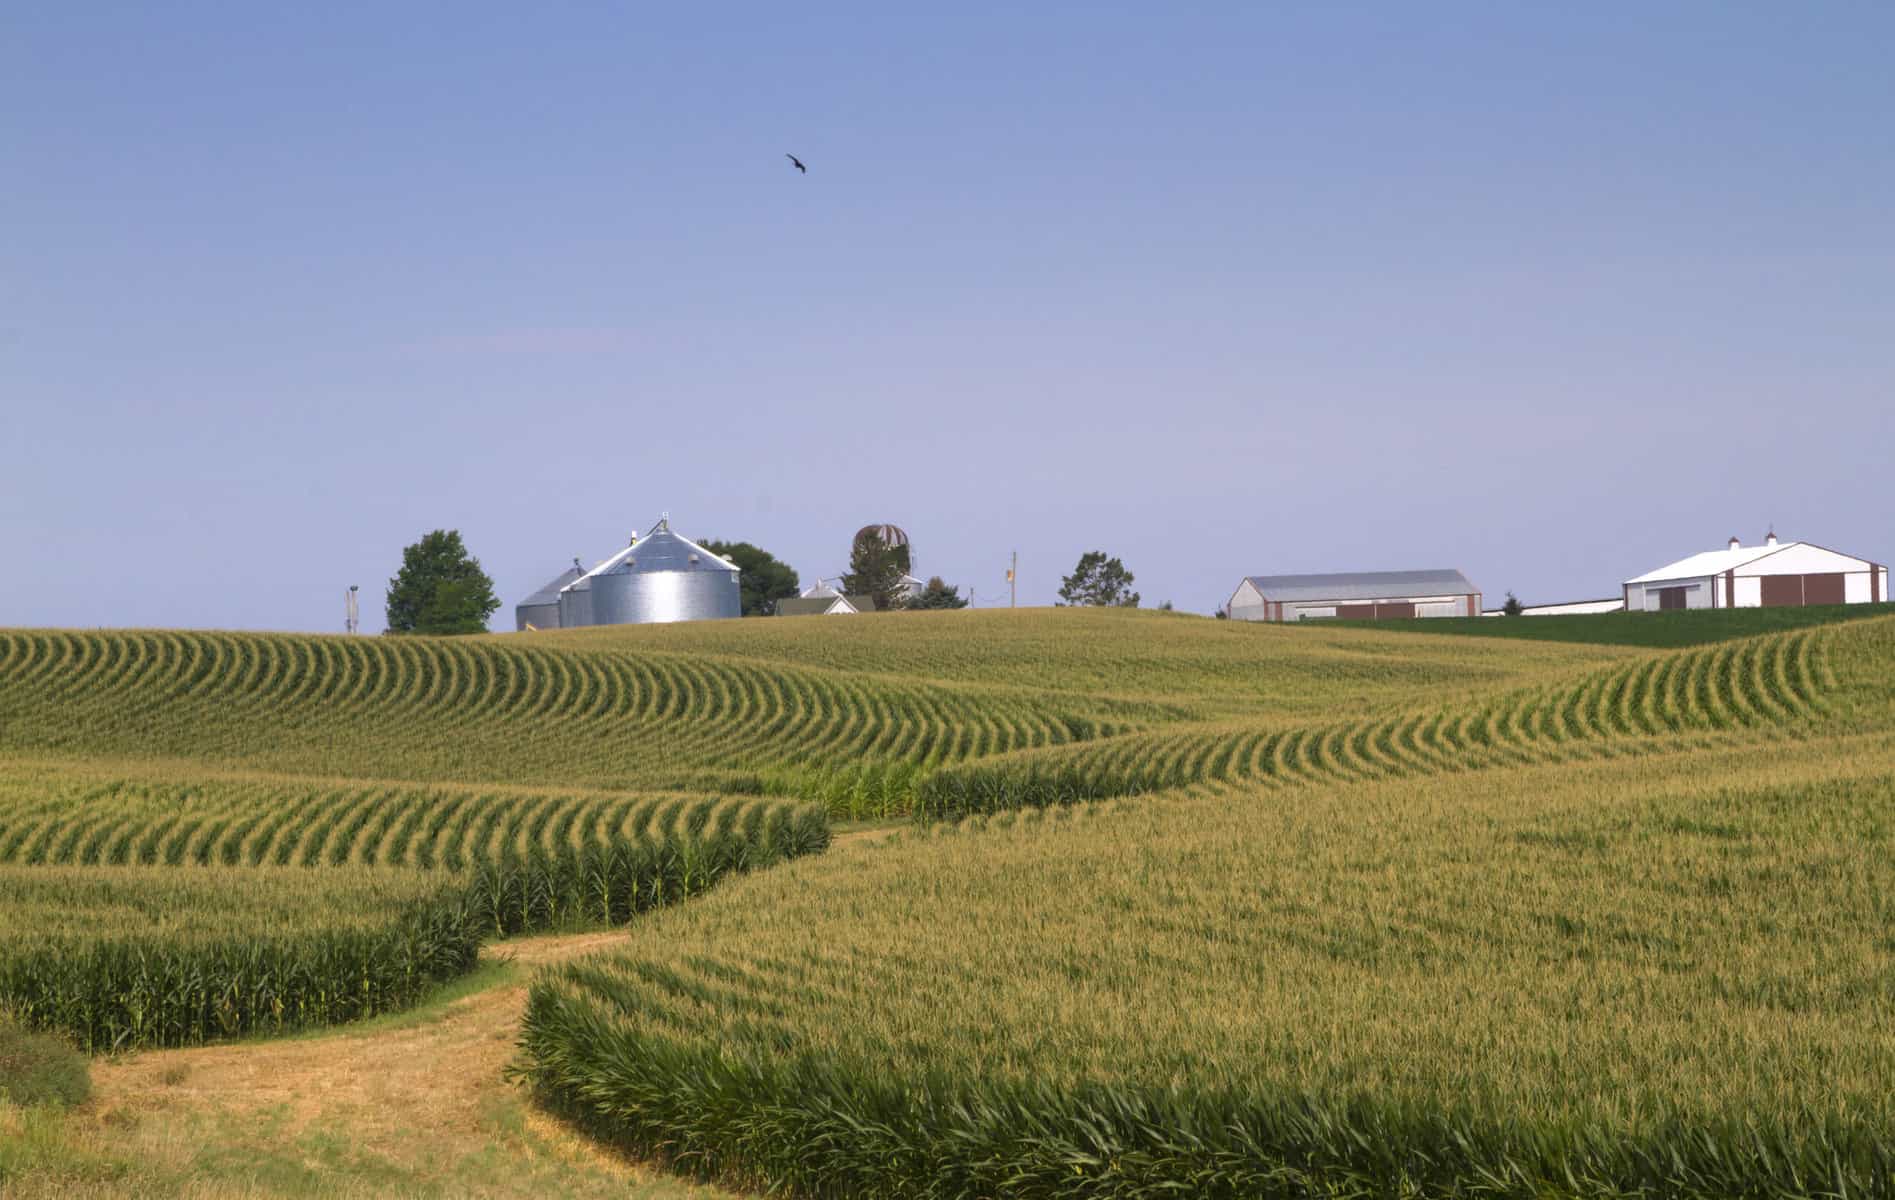 Corn field in Iowa under a blue sky